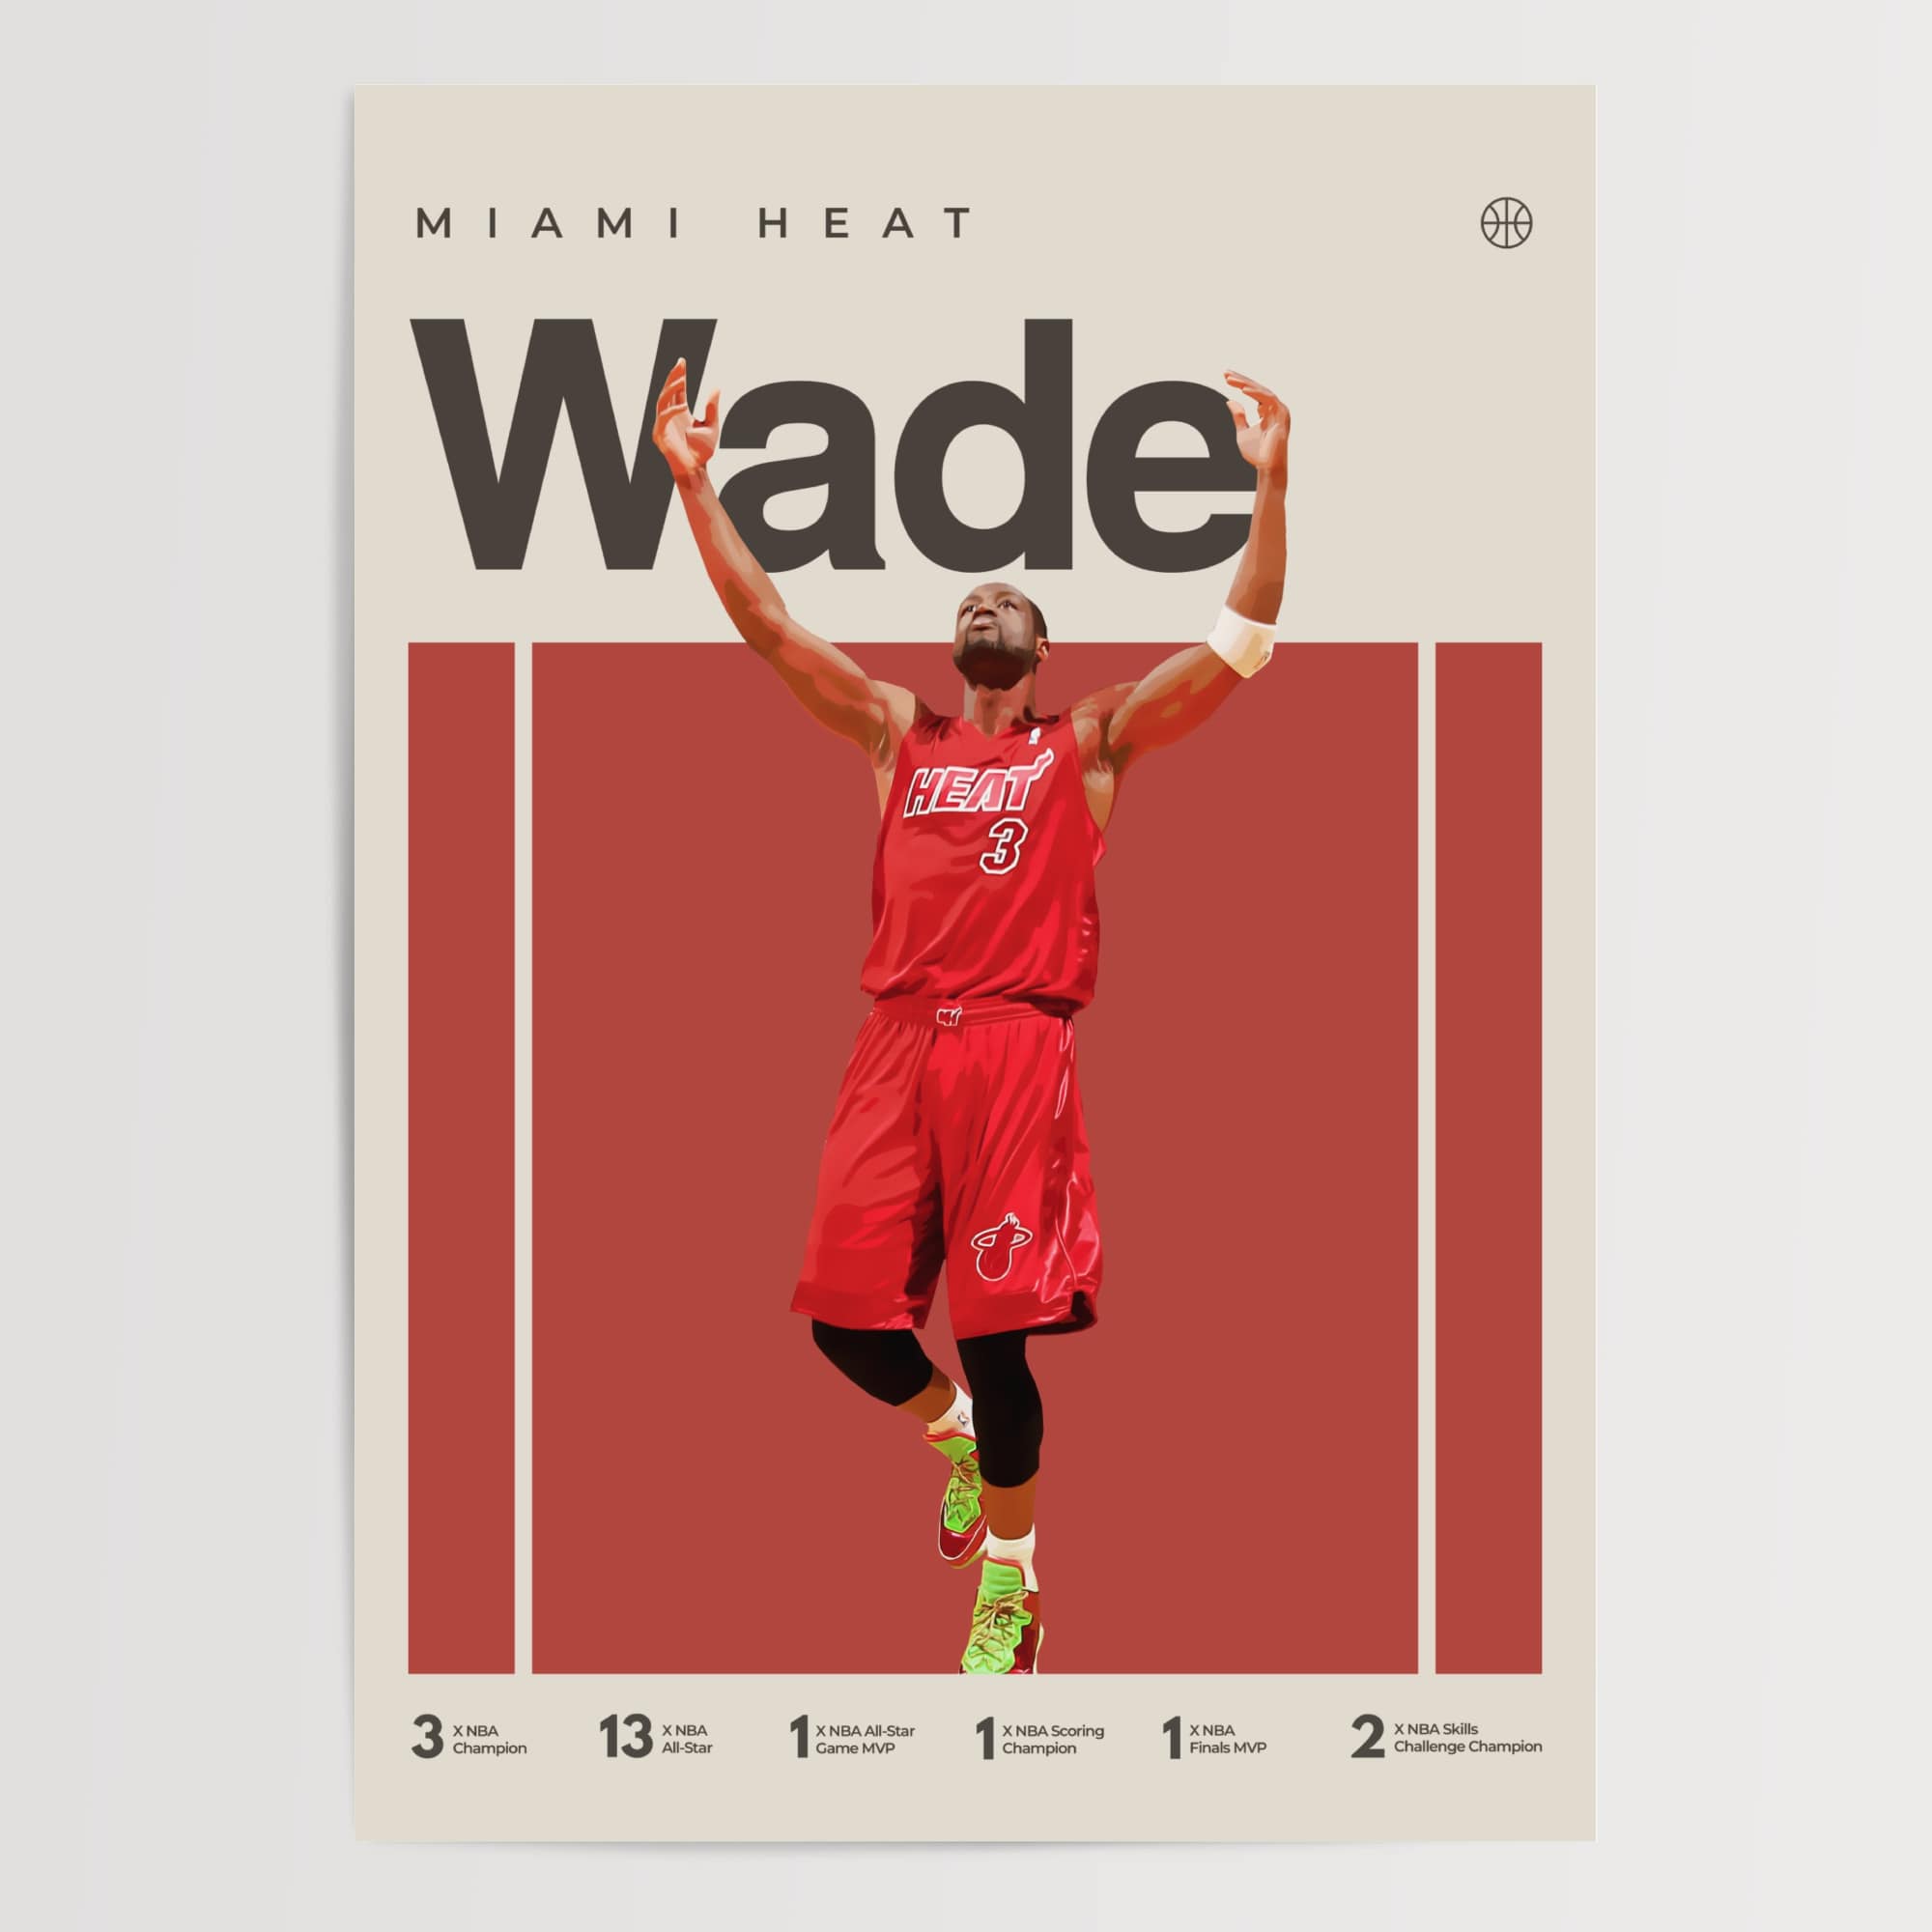 Dwayne Wade Poster, Miami Heat